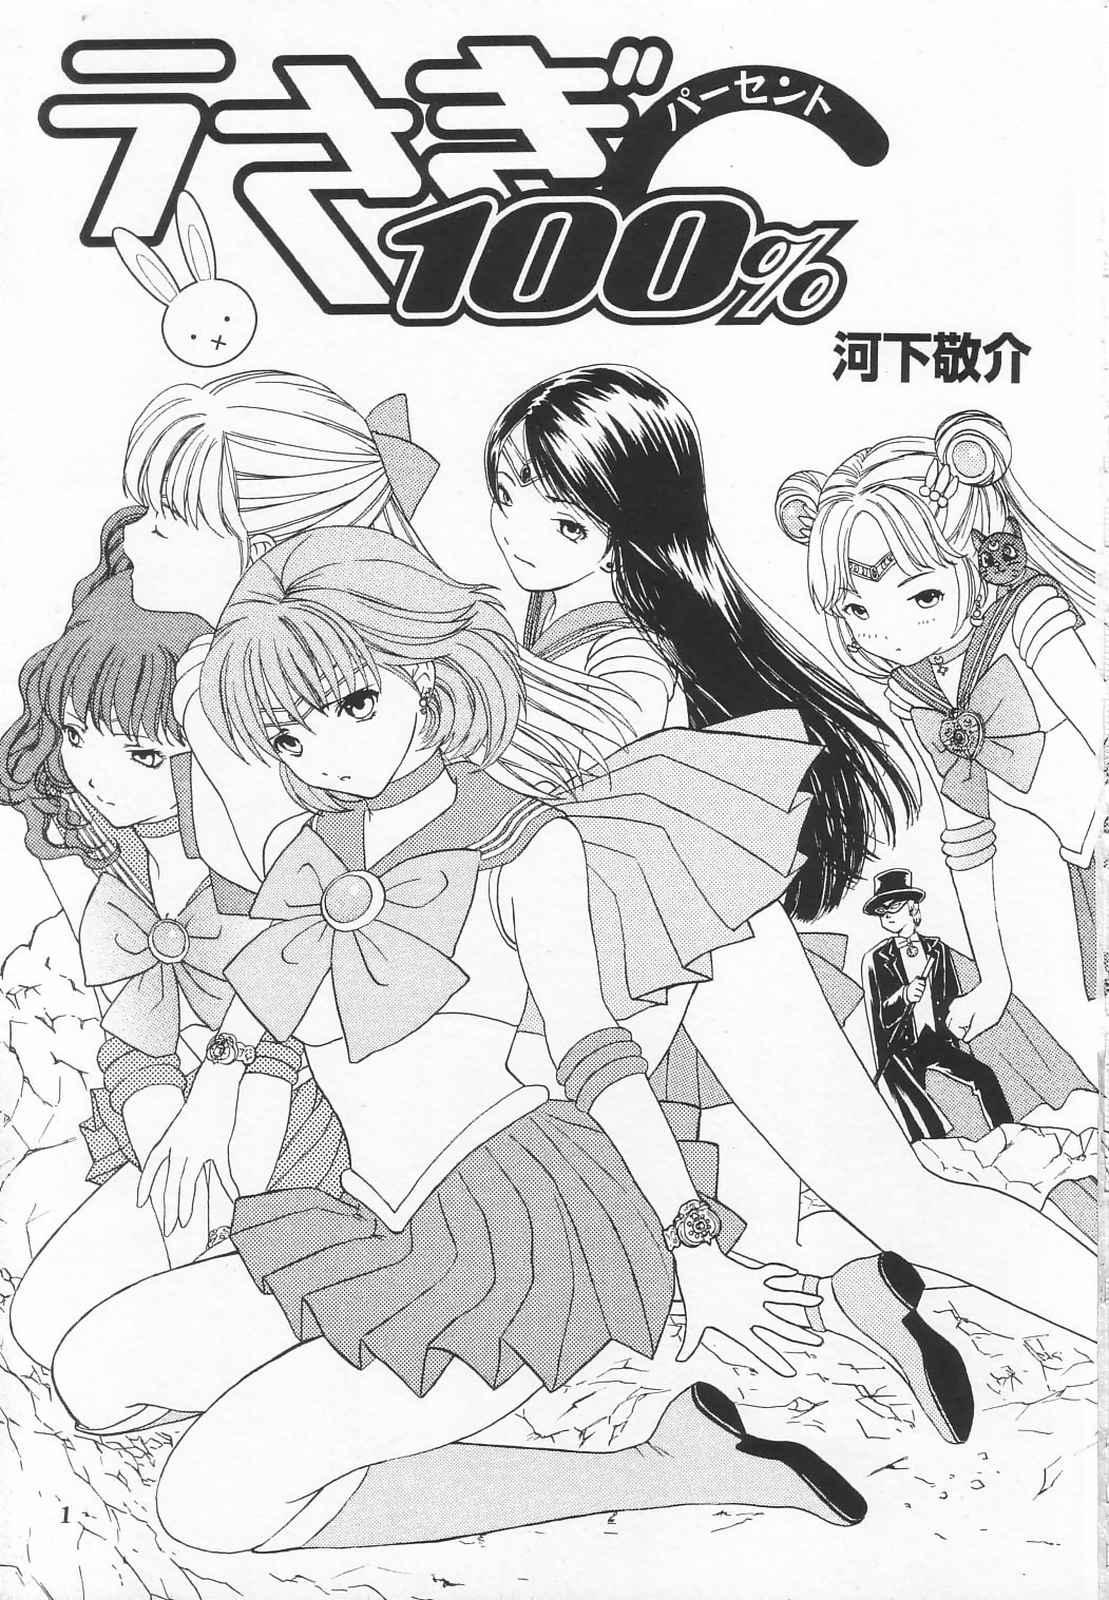 Porno Tokusatsu Magazine x 2003 Fuyu Gou - Sailor moon Ichigo 100 Police - Page 3